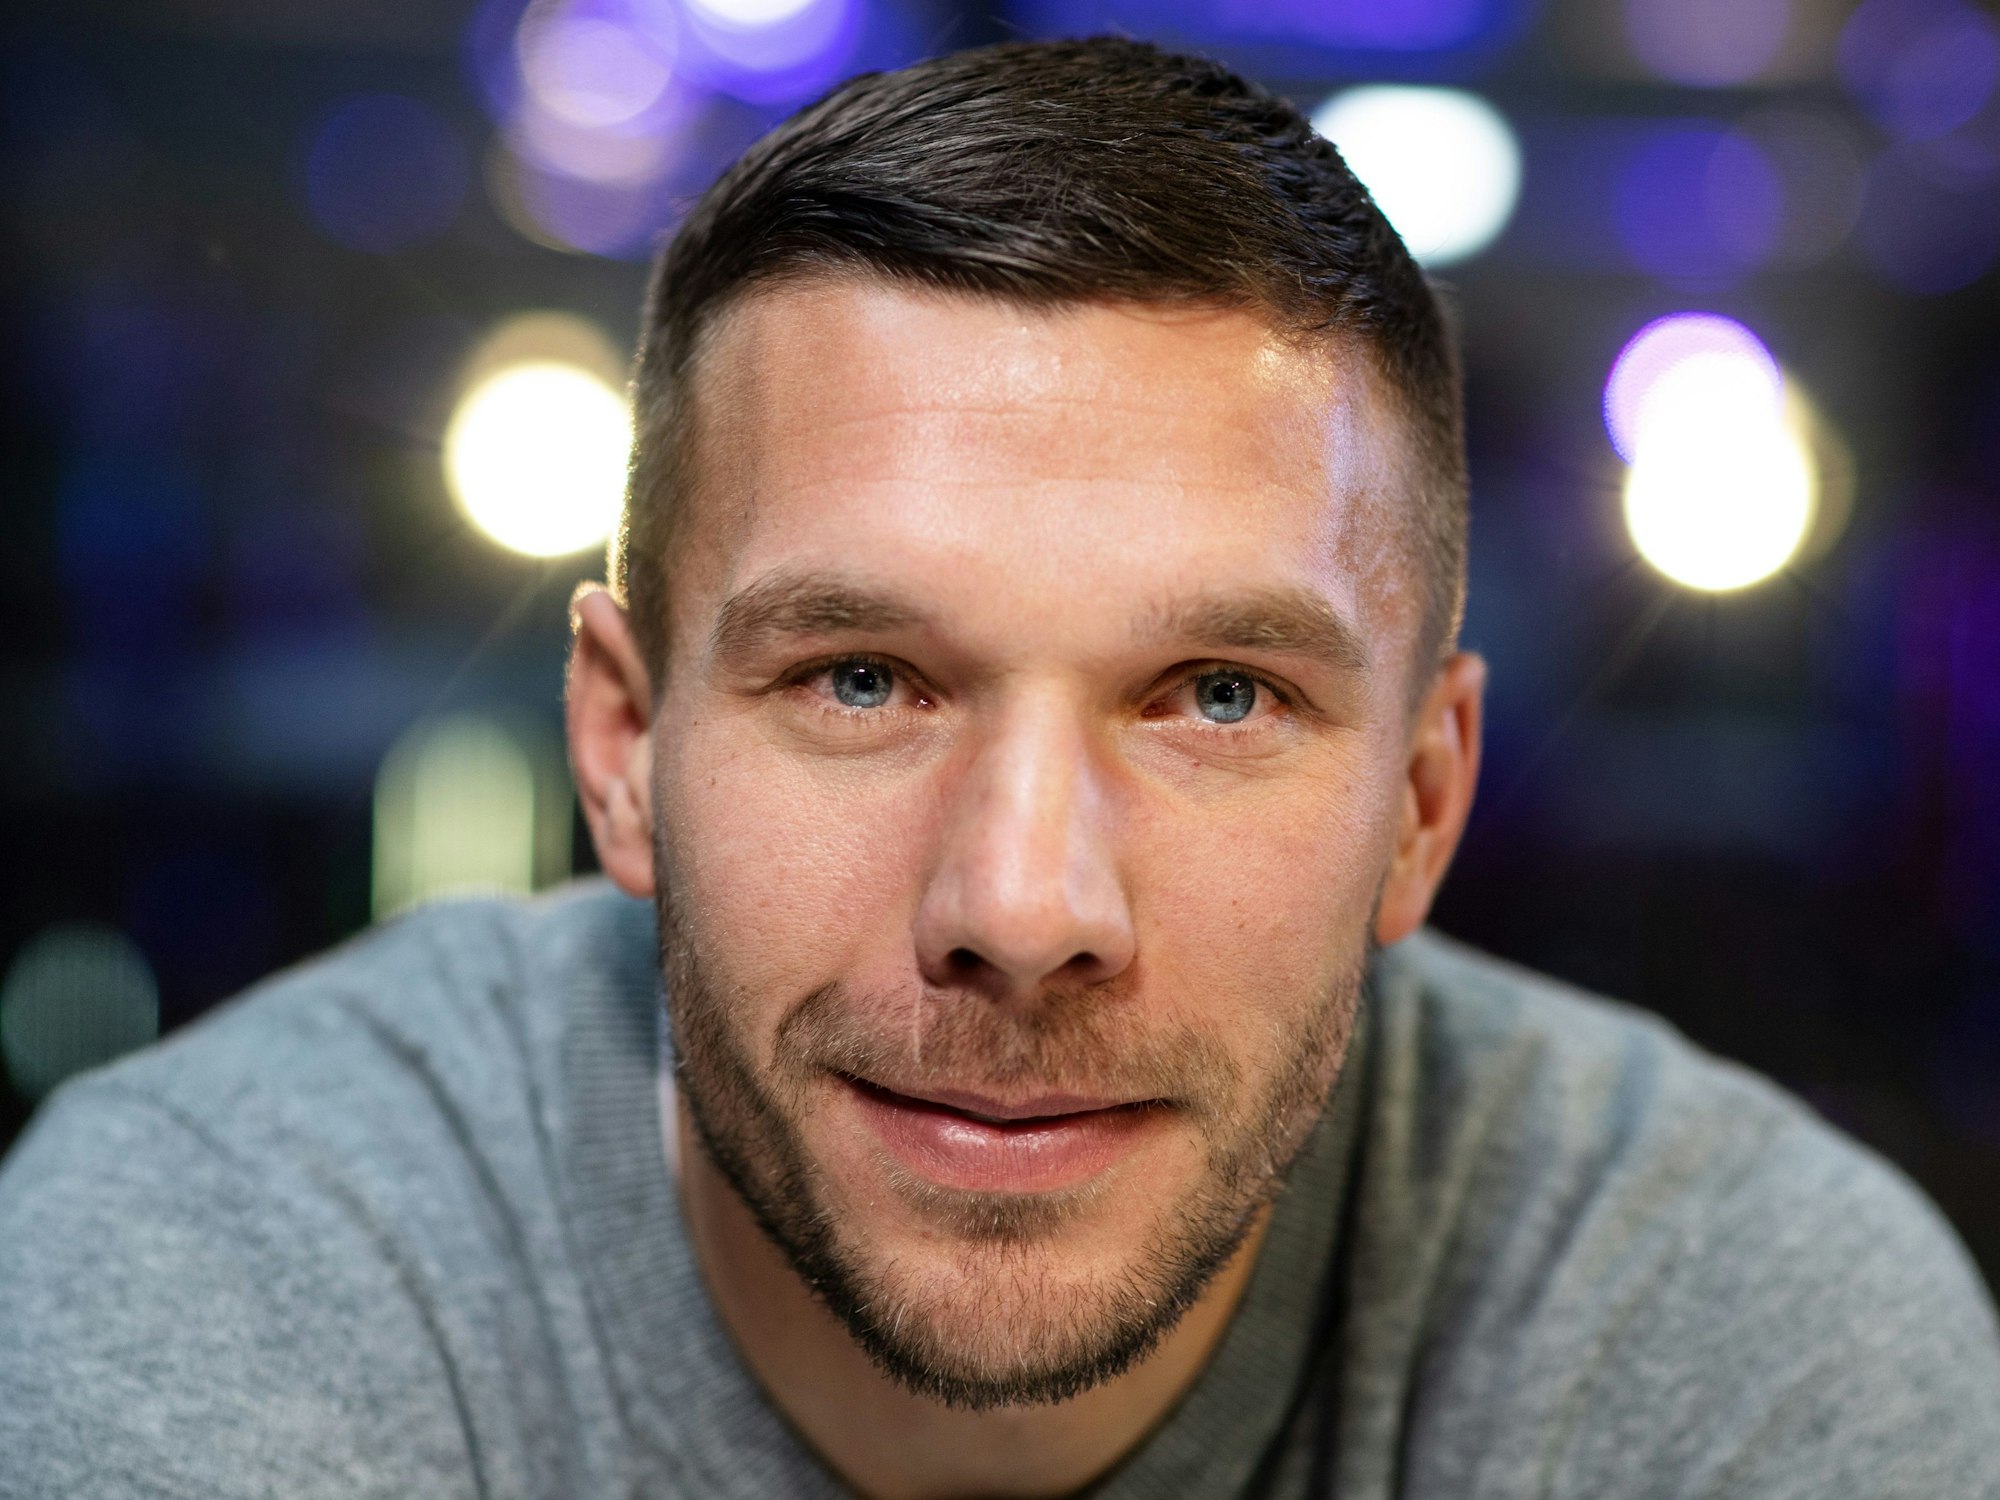 Der frühere Fußall-Nationalspieler Lukas Podolski lächelt in die Kamera.